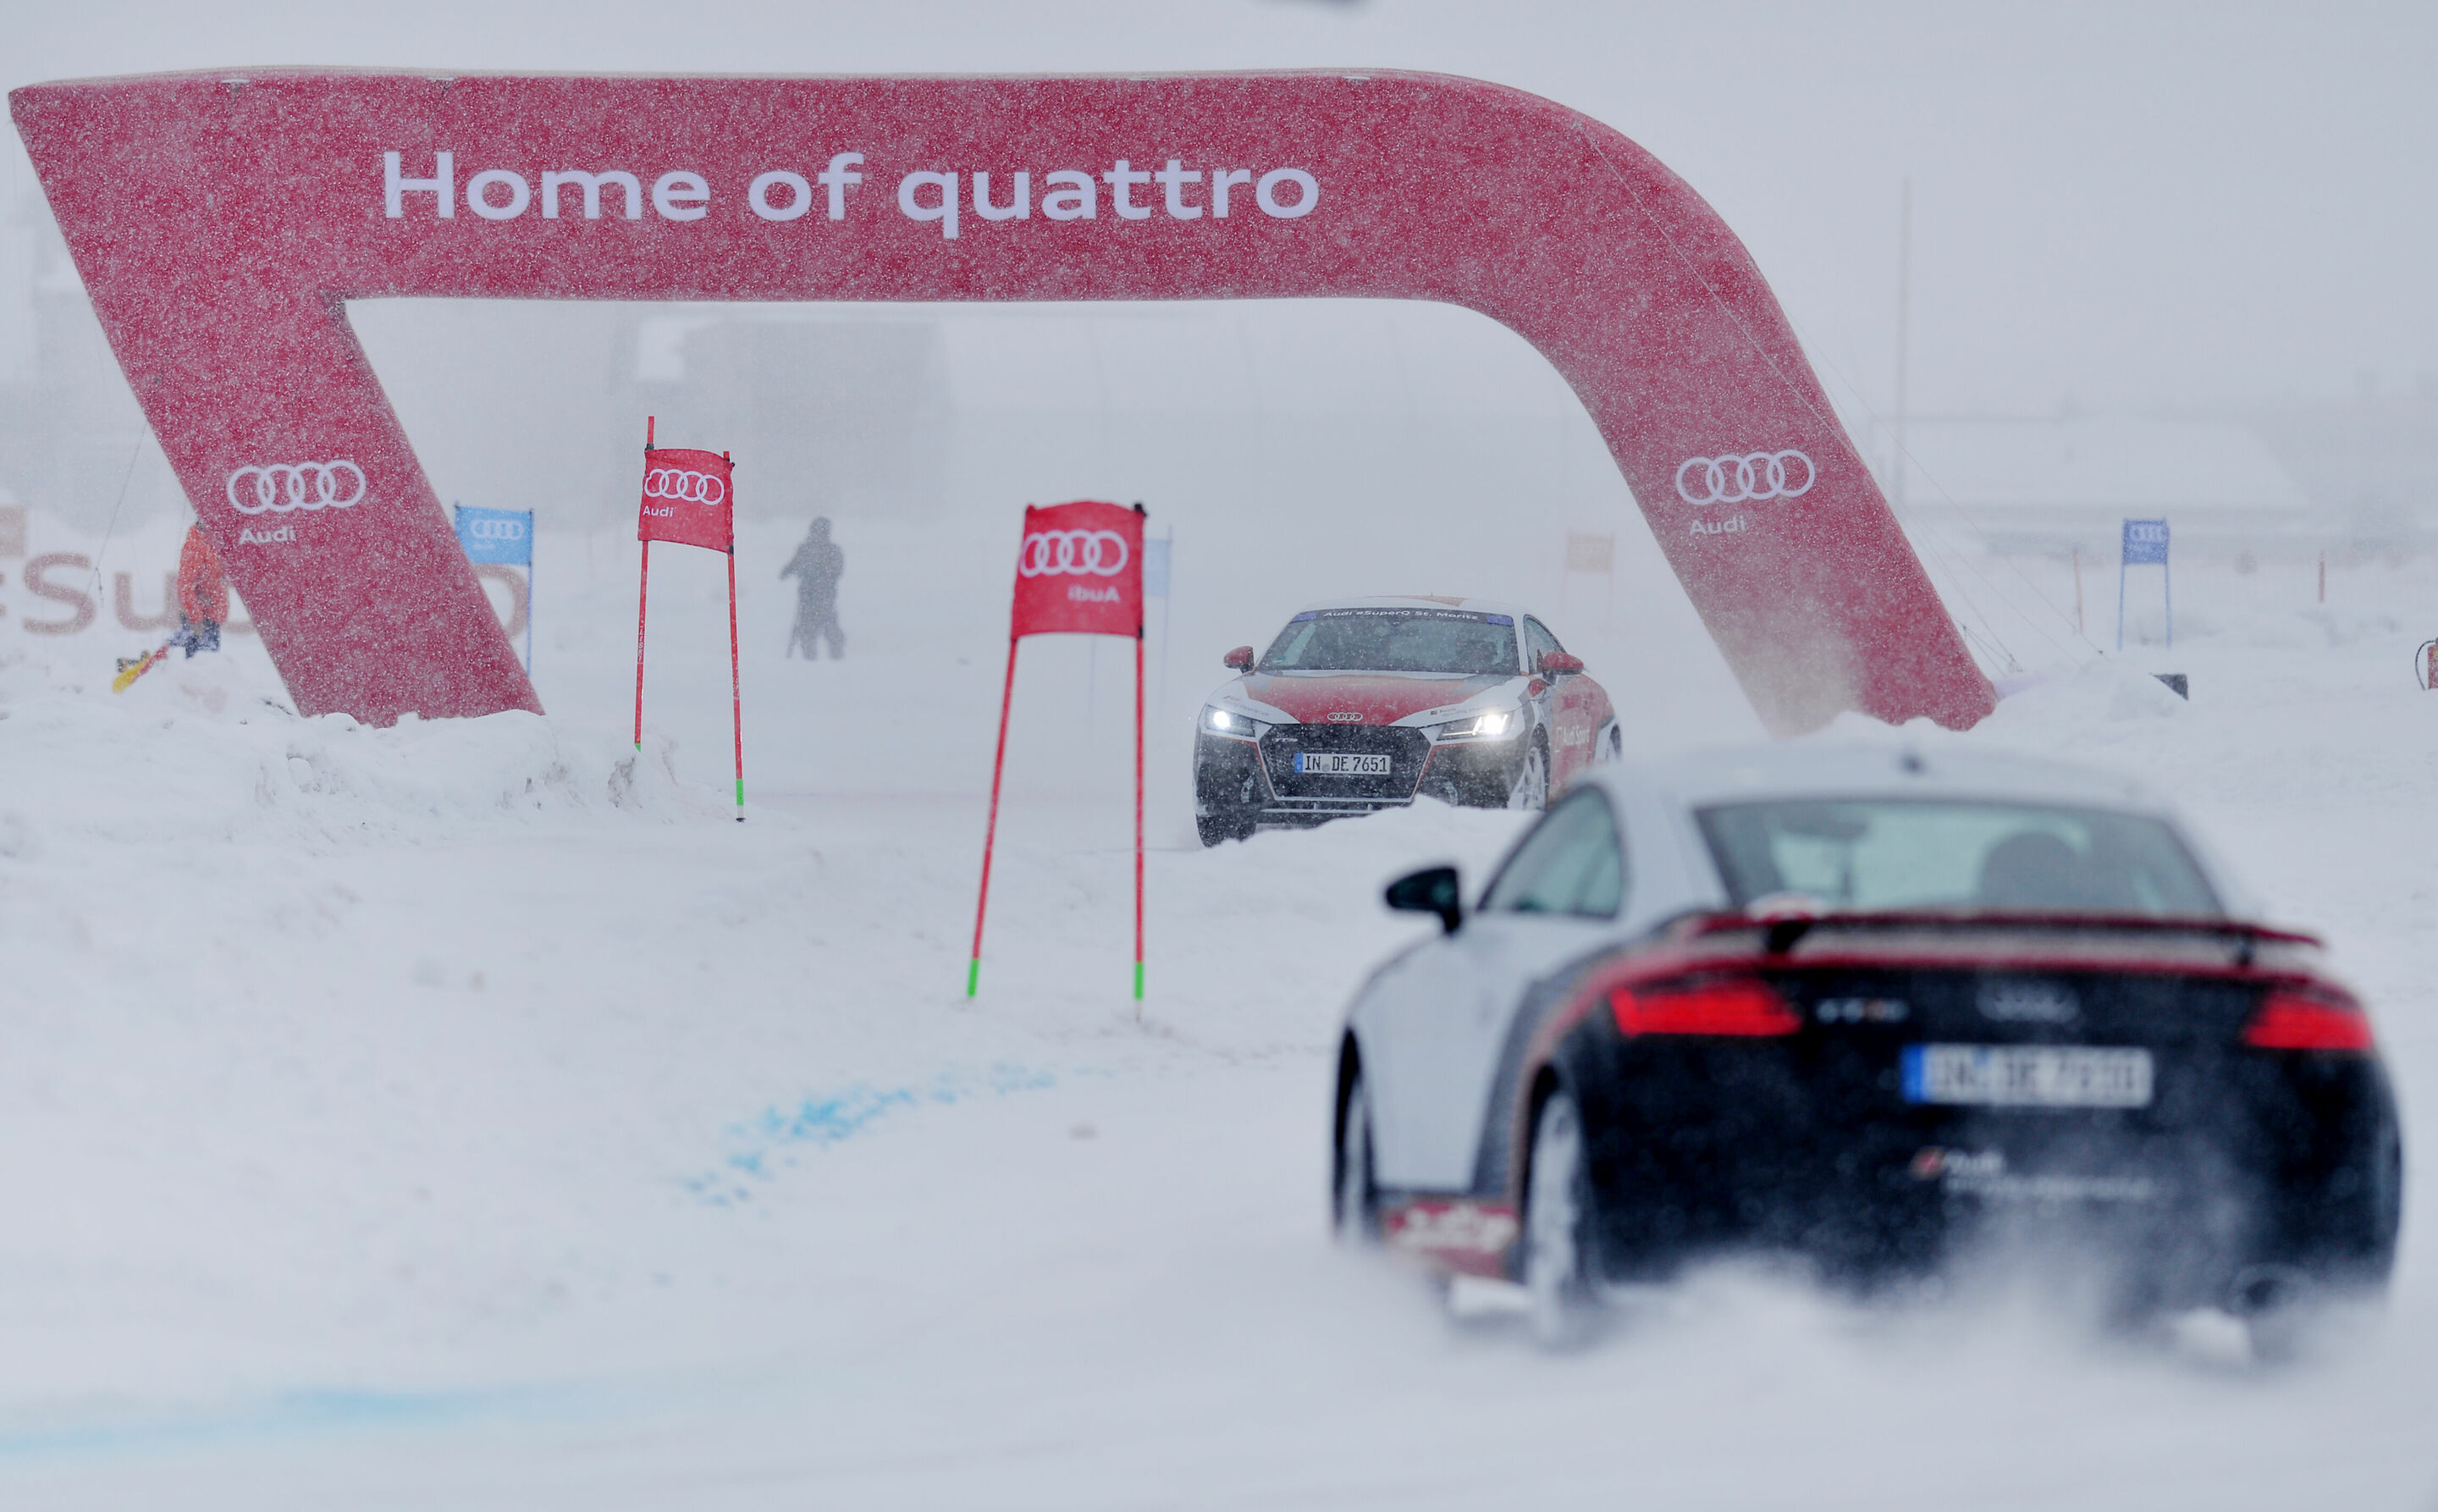 Audi #SuperQ St. Moritz